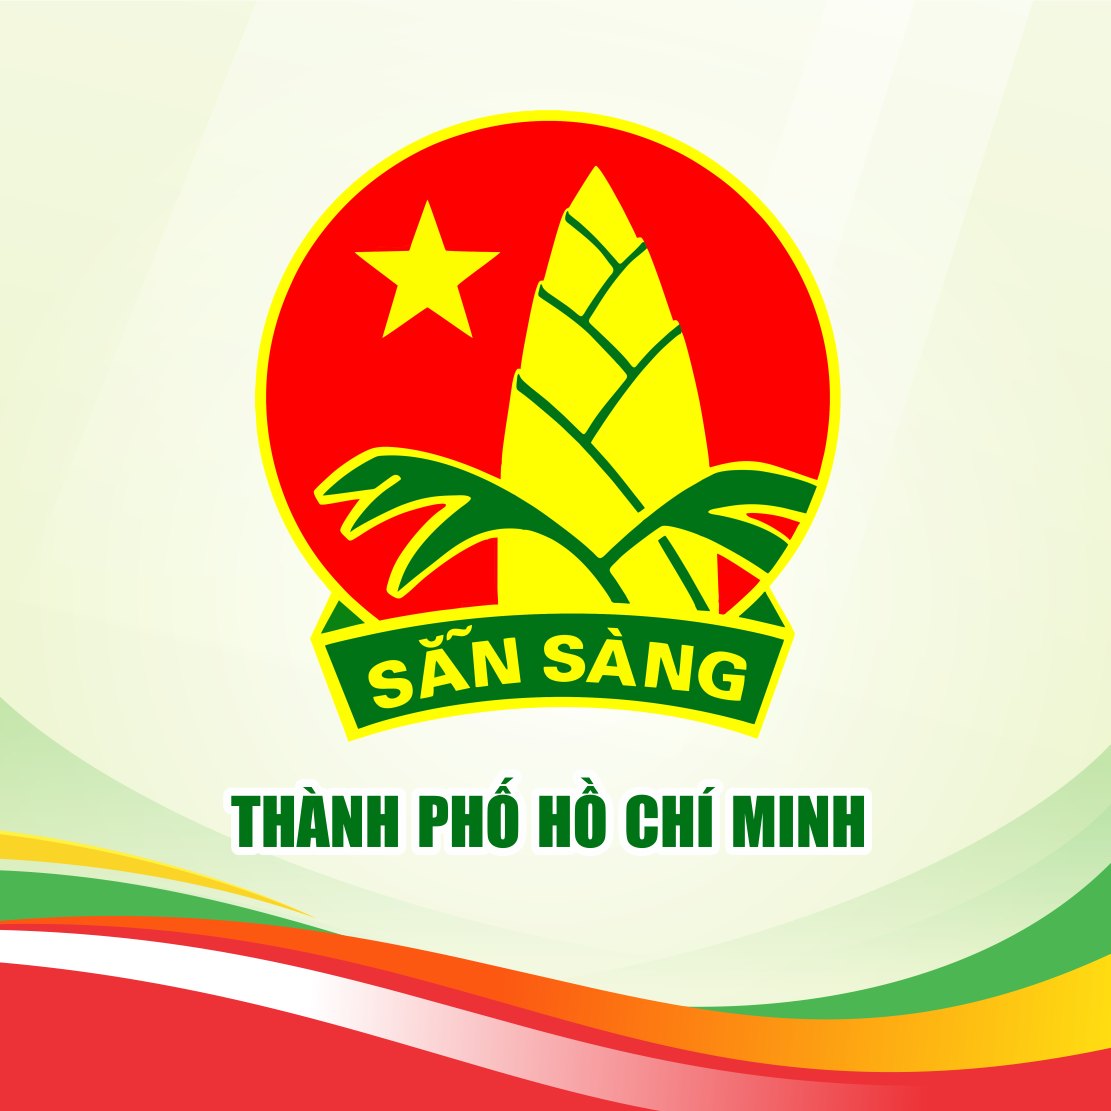 THIẾU NHI TP. HỒ CHÍ MINH trang cộng đồng của đội viên, thiếu nhi TP. Hồ Chí Minh